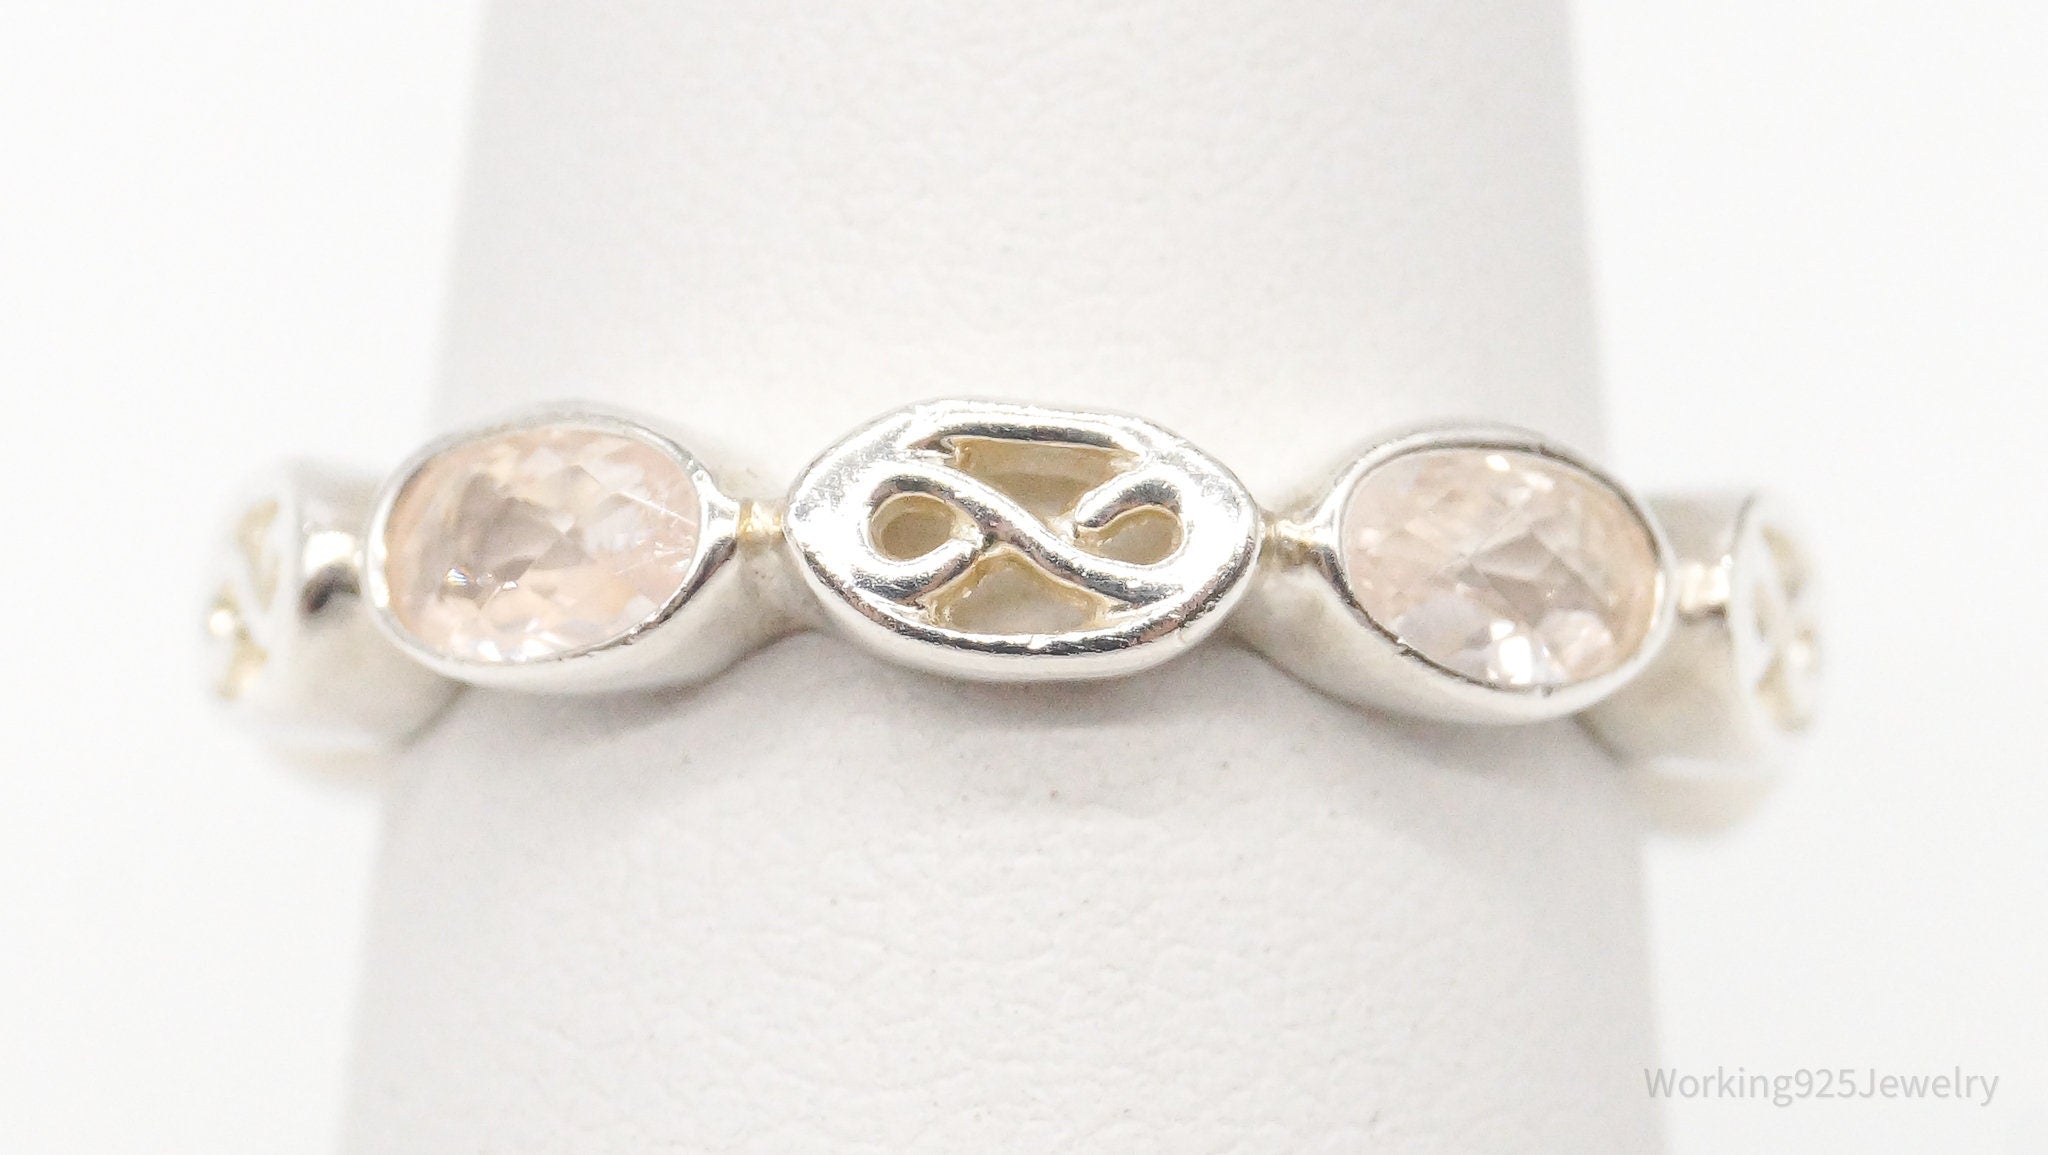 Vintage Rose Quartz Sterling Silver Ring - Size 6.25